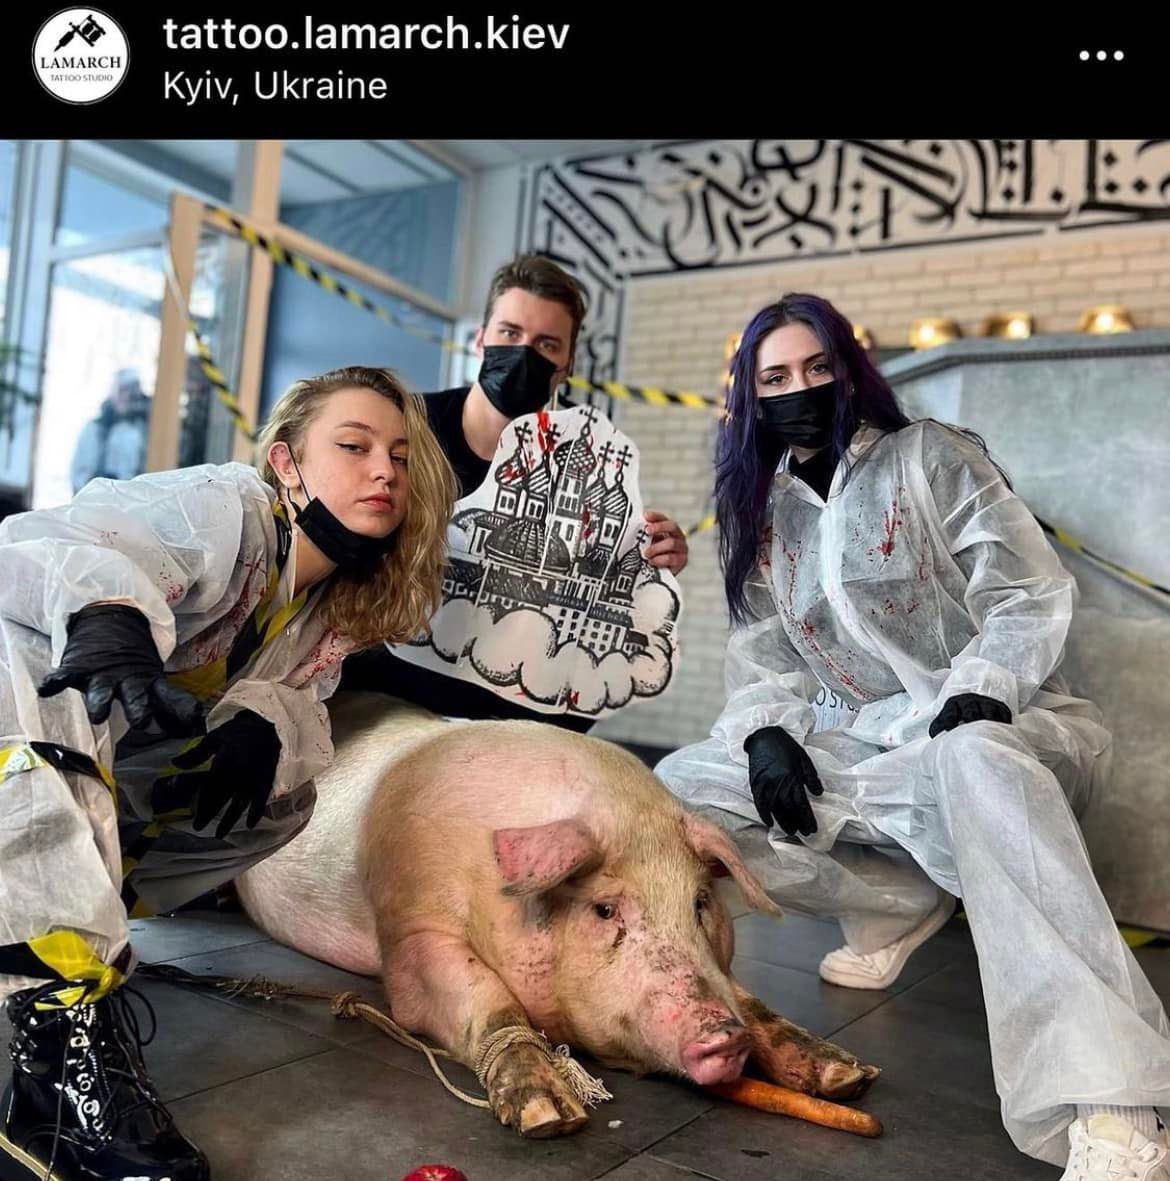 Зооскандал: працівники київського тату-салону хотіли набити куполи на свині (фото)